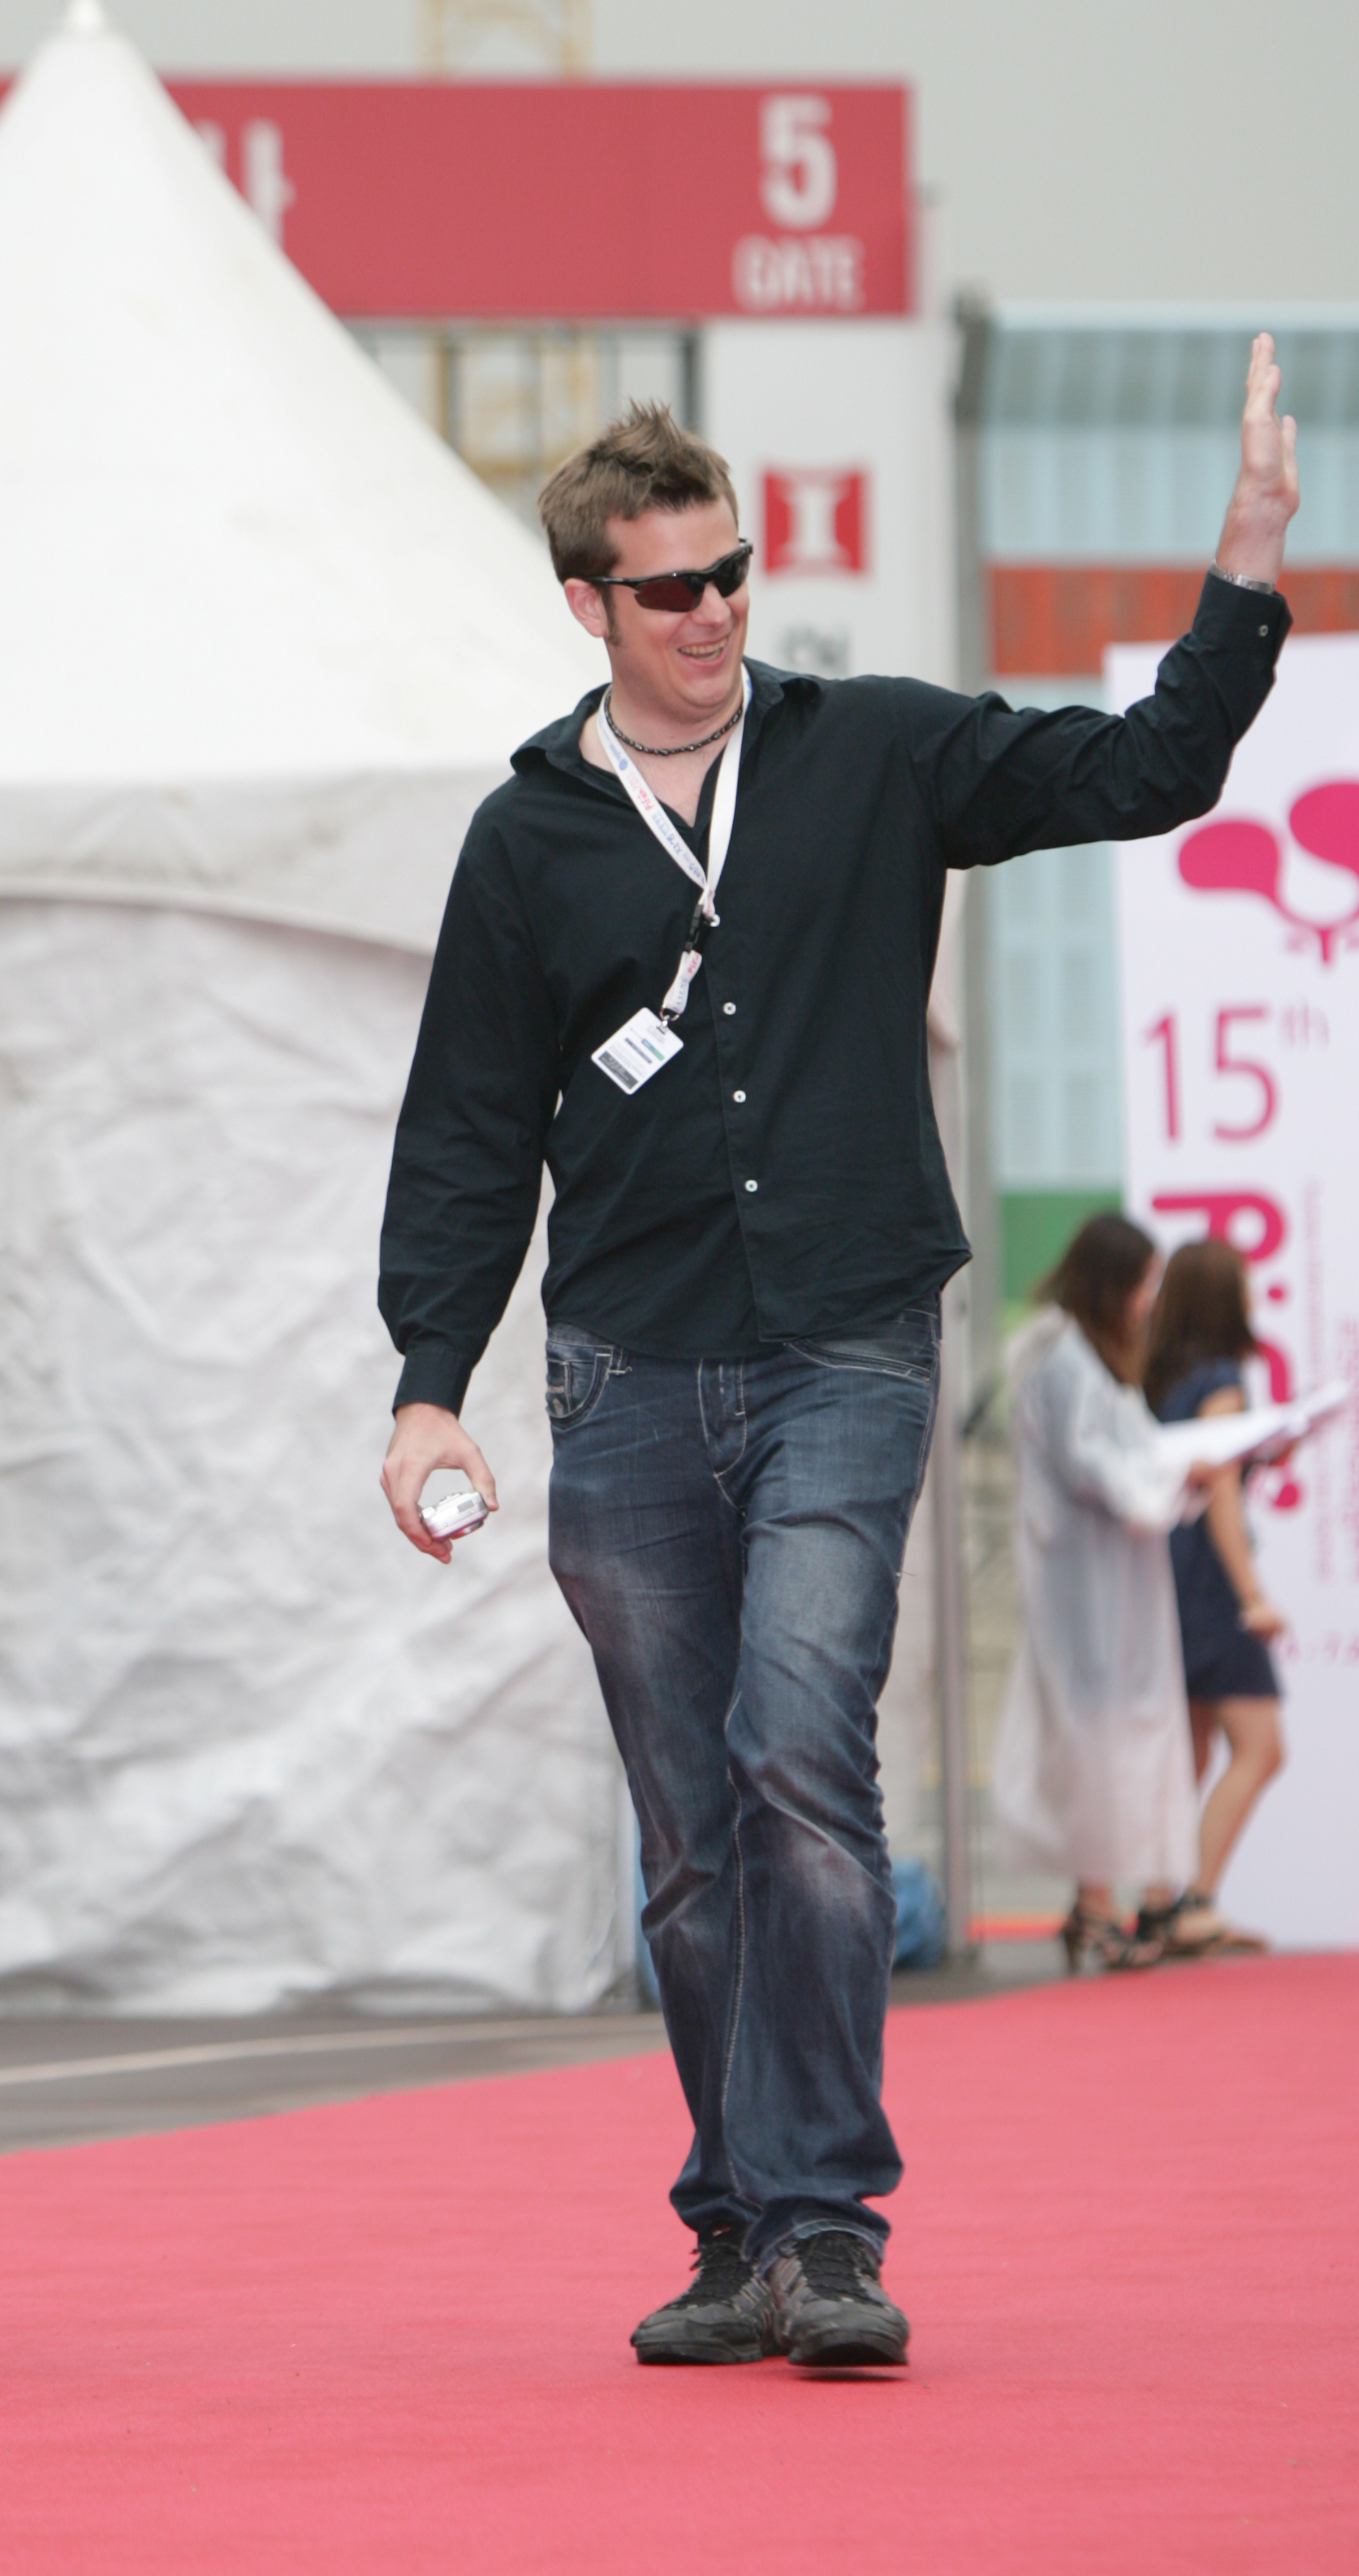 Dan Asenlund at Puchon International Film Festival (PIFAN) 2011